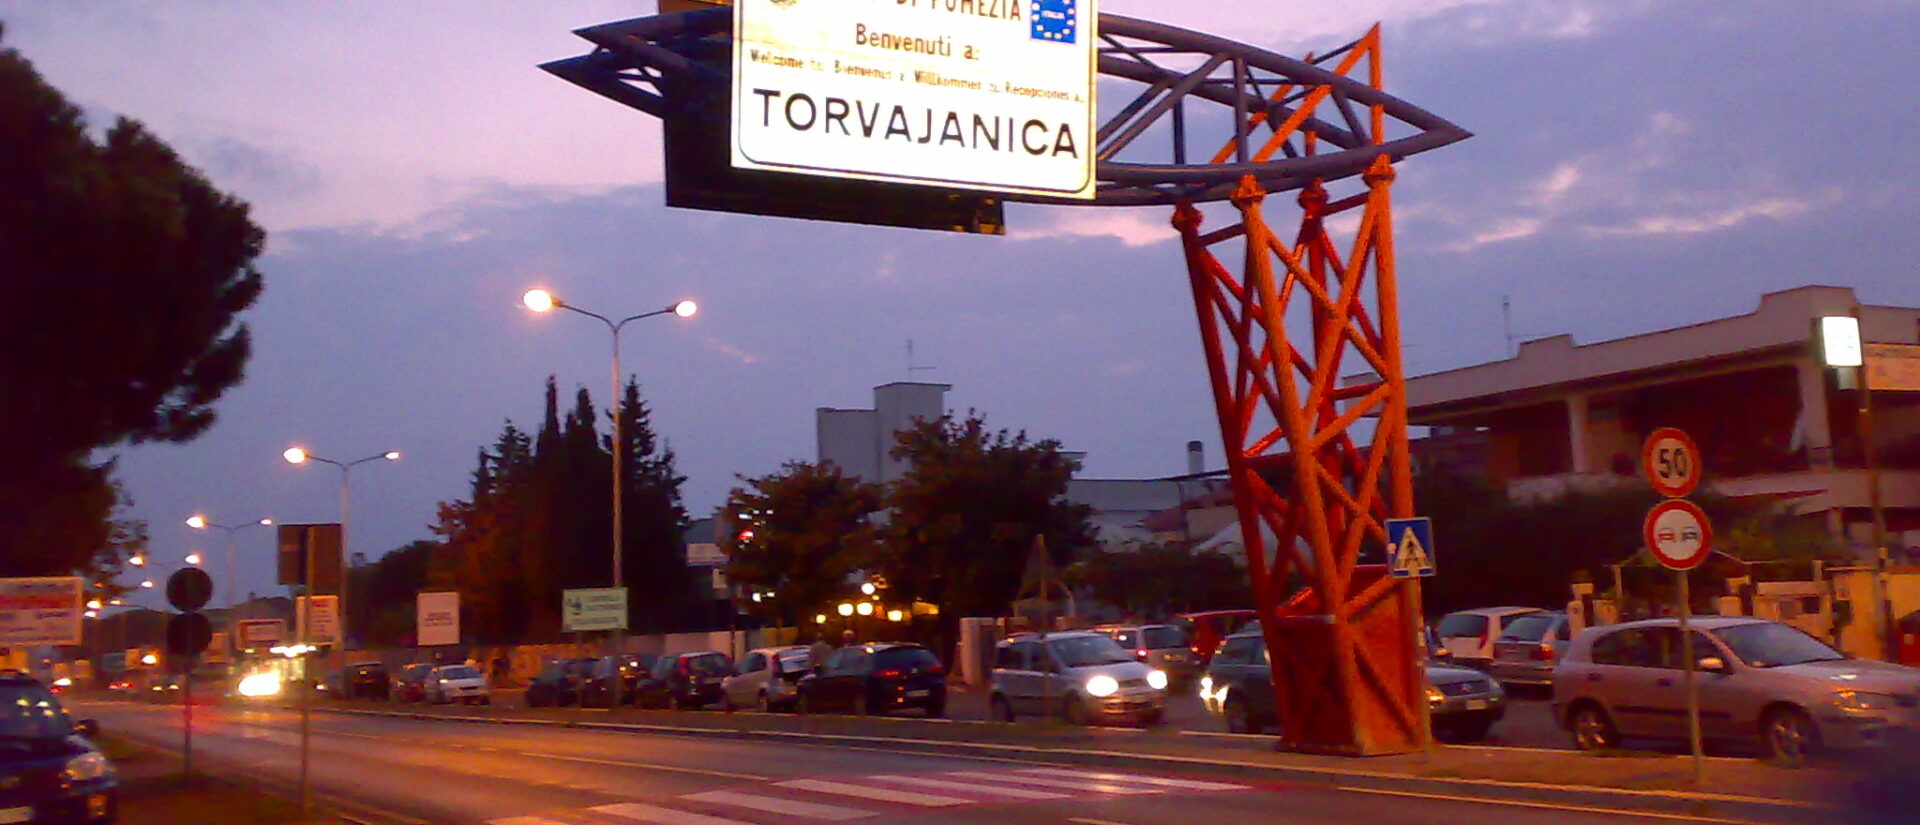 Les personnes transsexuelles aidées par le pape travaillent sur les routes de Torvaianica | © Andy90/Wikimedia/CC BY-SA 3.0